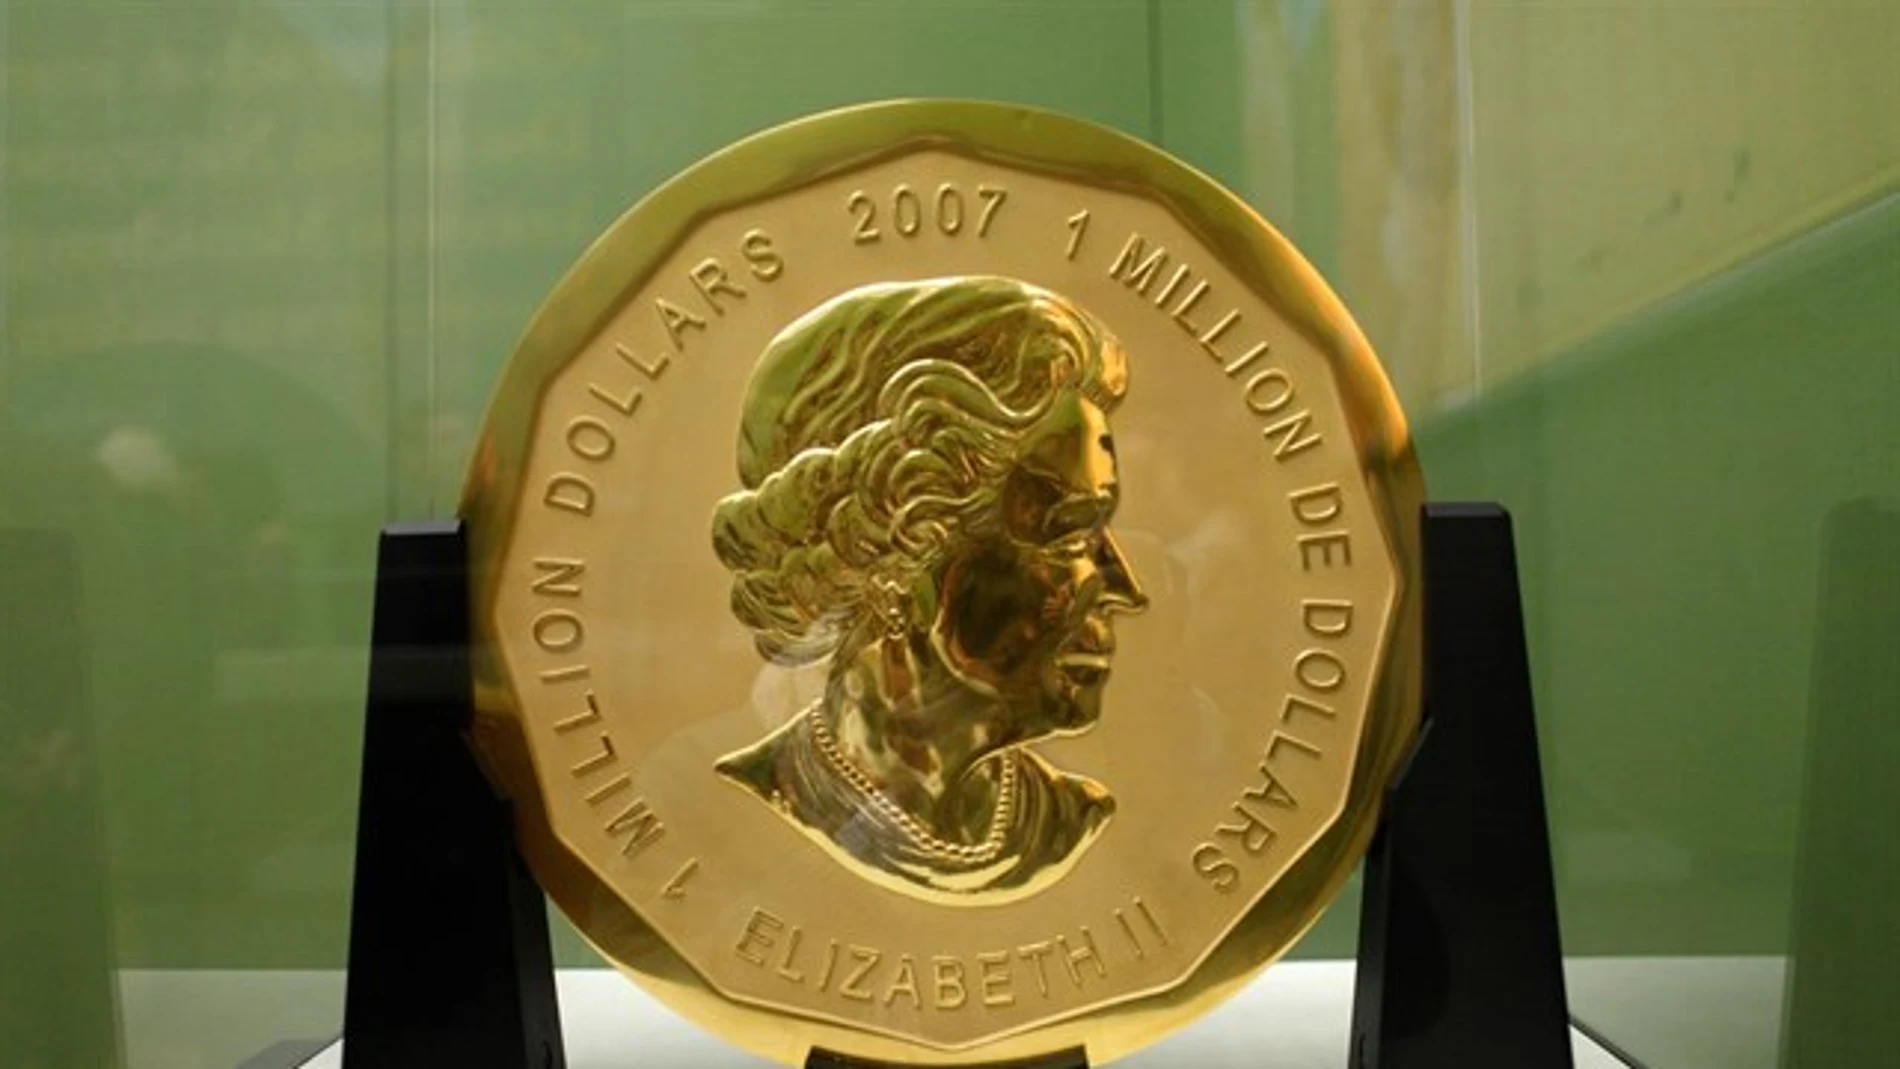 Detienen a dos personas en Berlín por robar una moneda de oro de 100 kilos